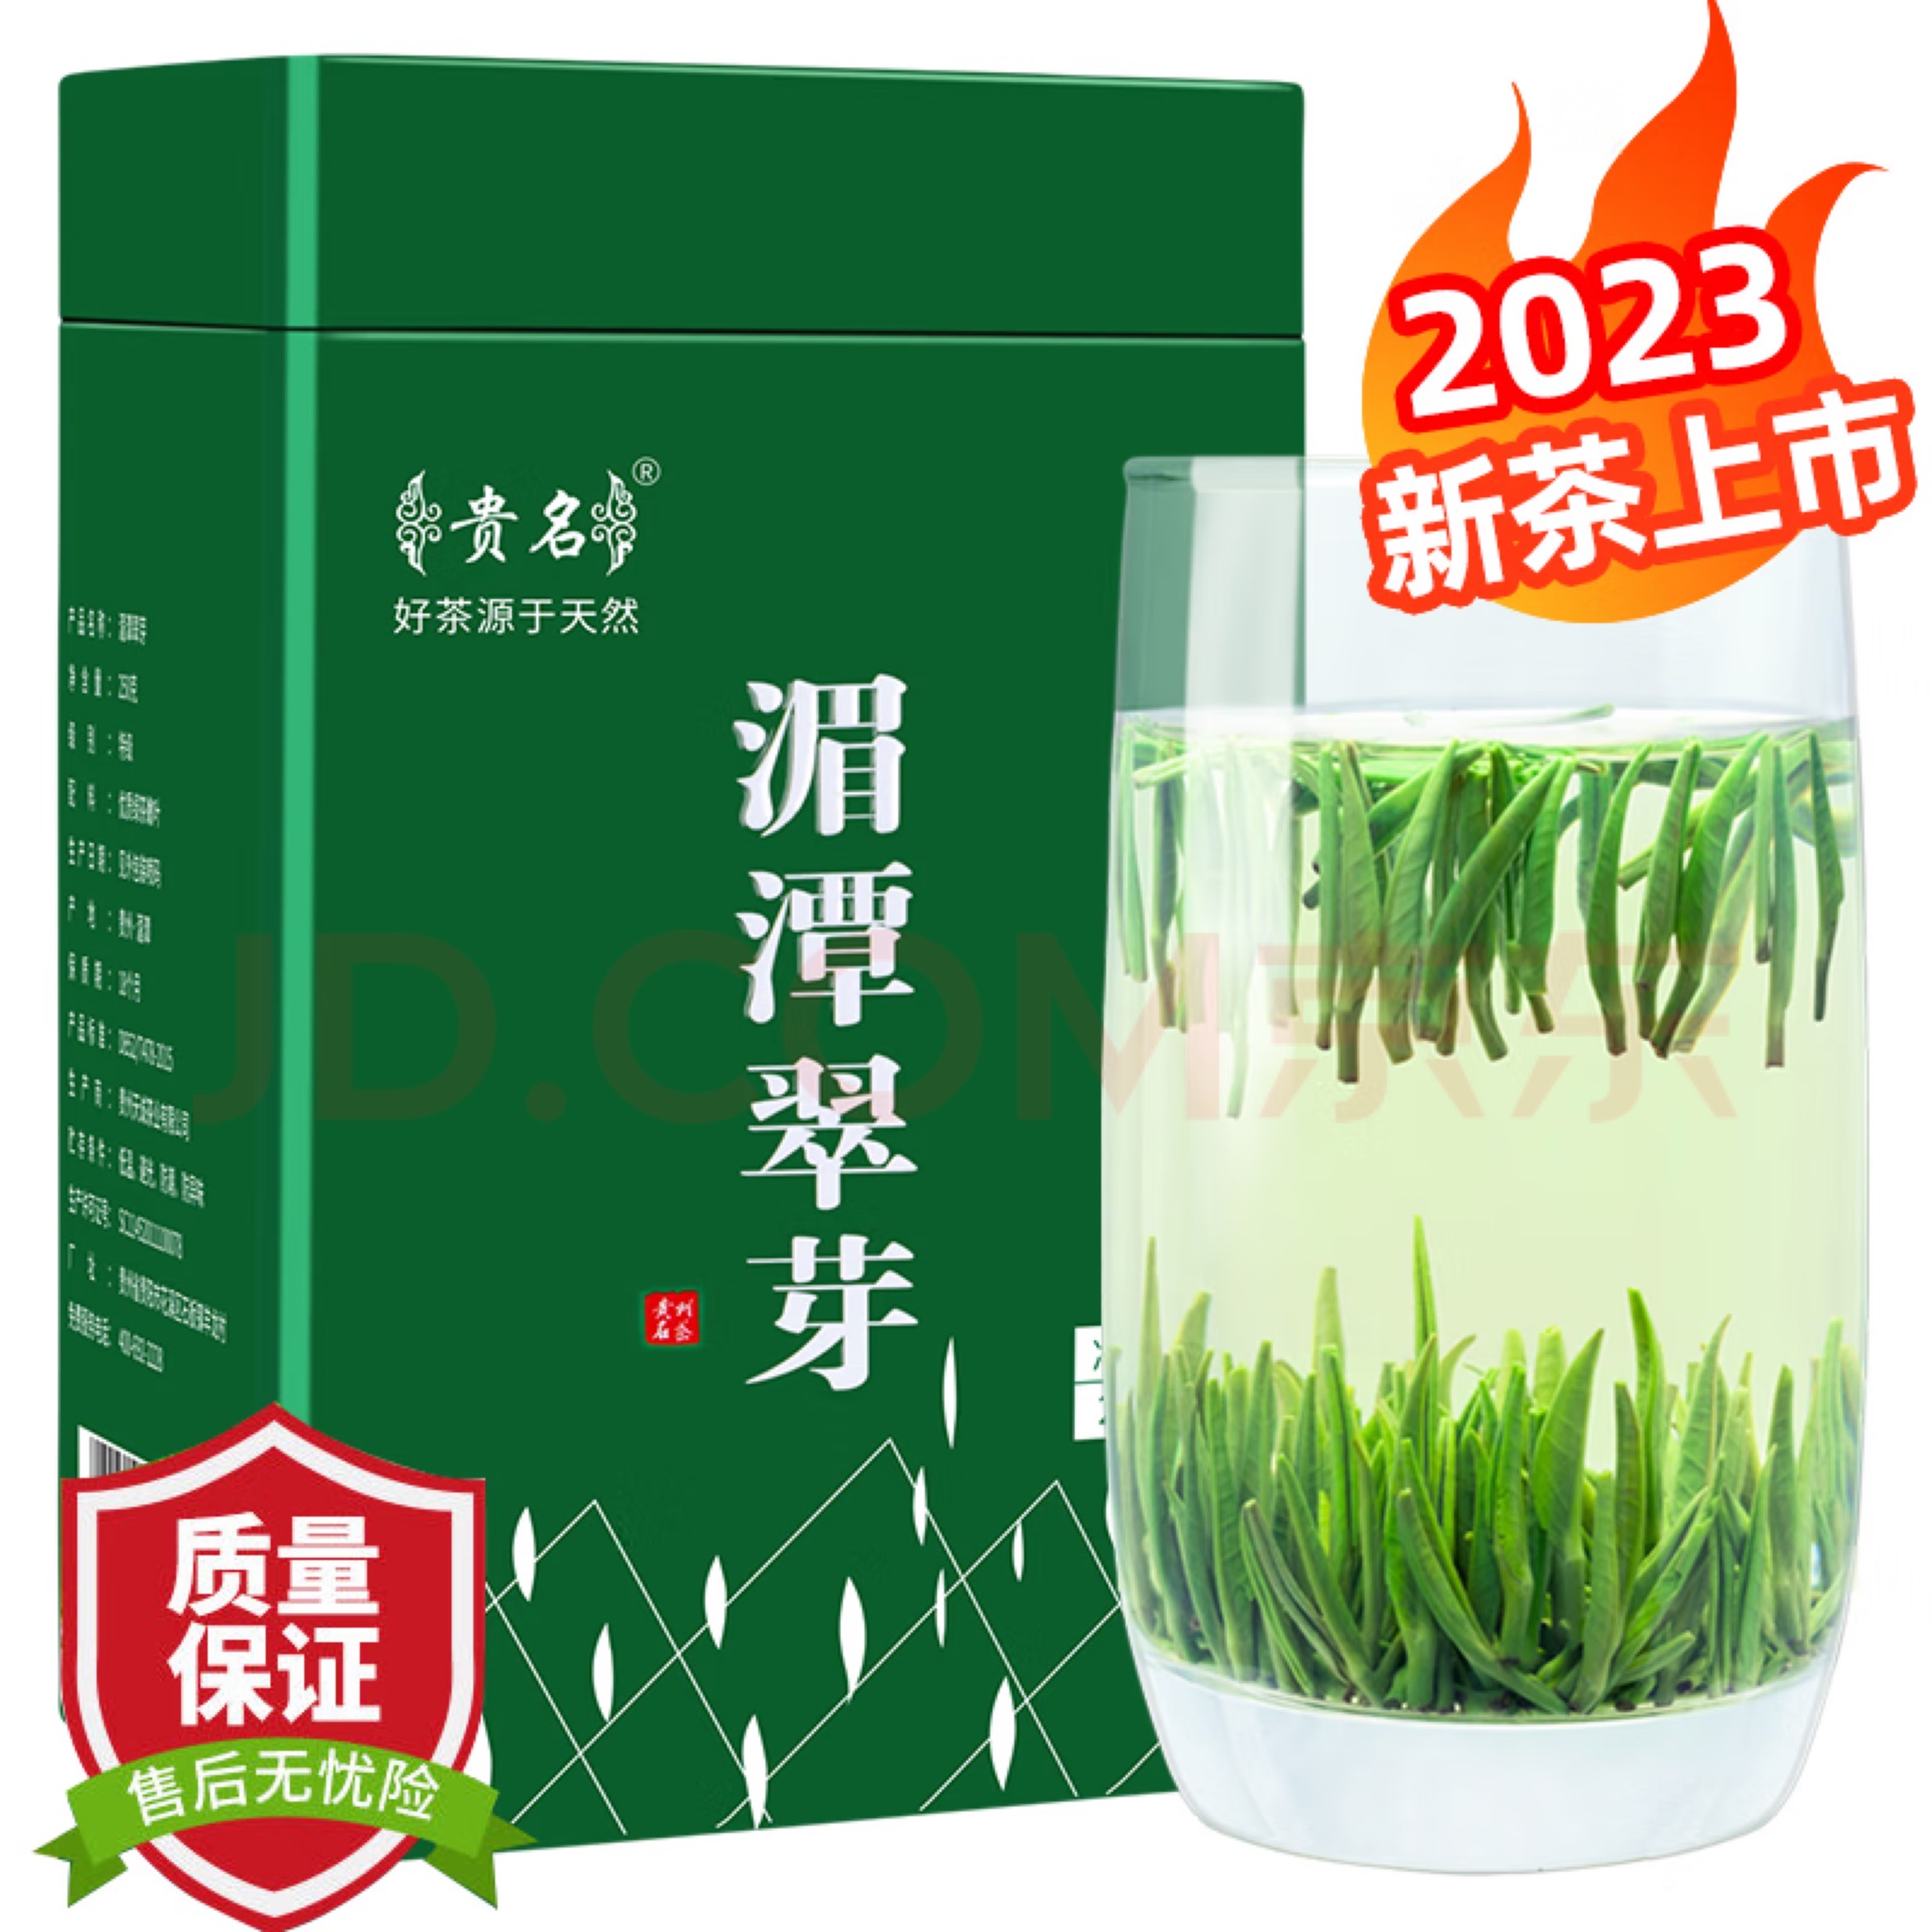 贵名 贵州湄潭翠芽雀舌茶叶2023新茶特级明前春茶浓香型绿茶罐装250g 正宗湄潭翠芽 